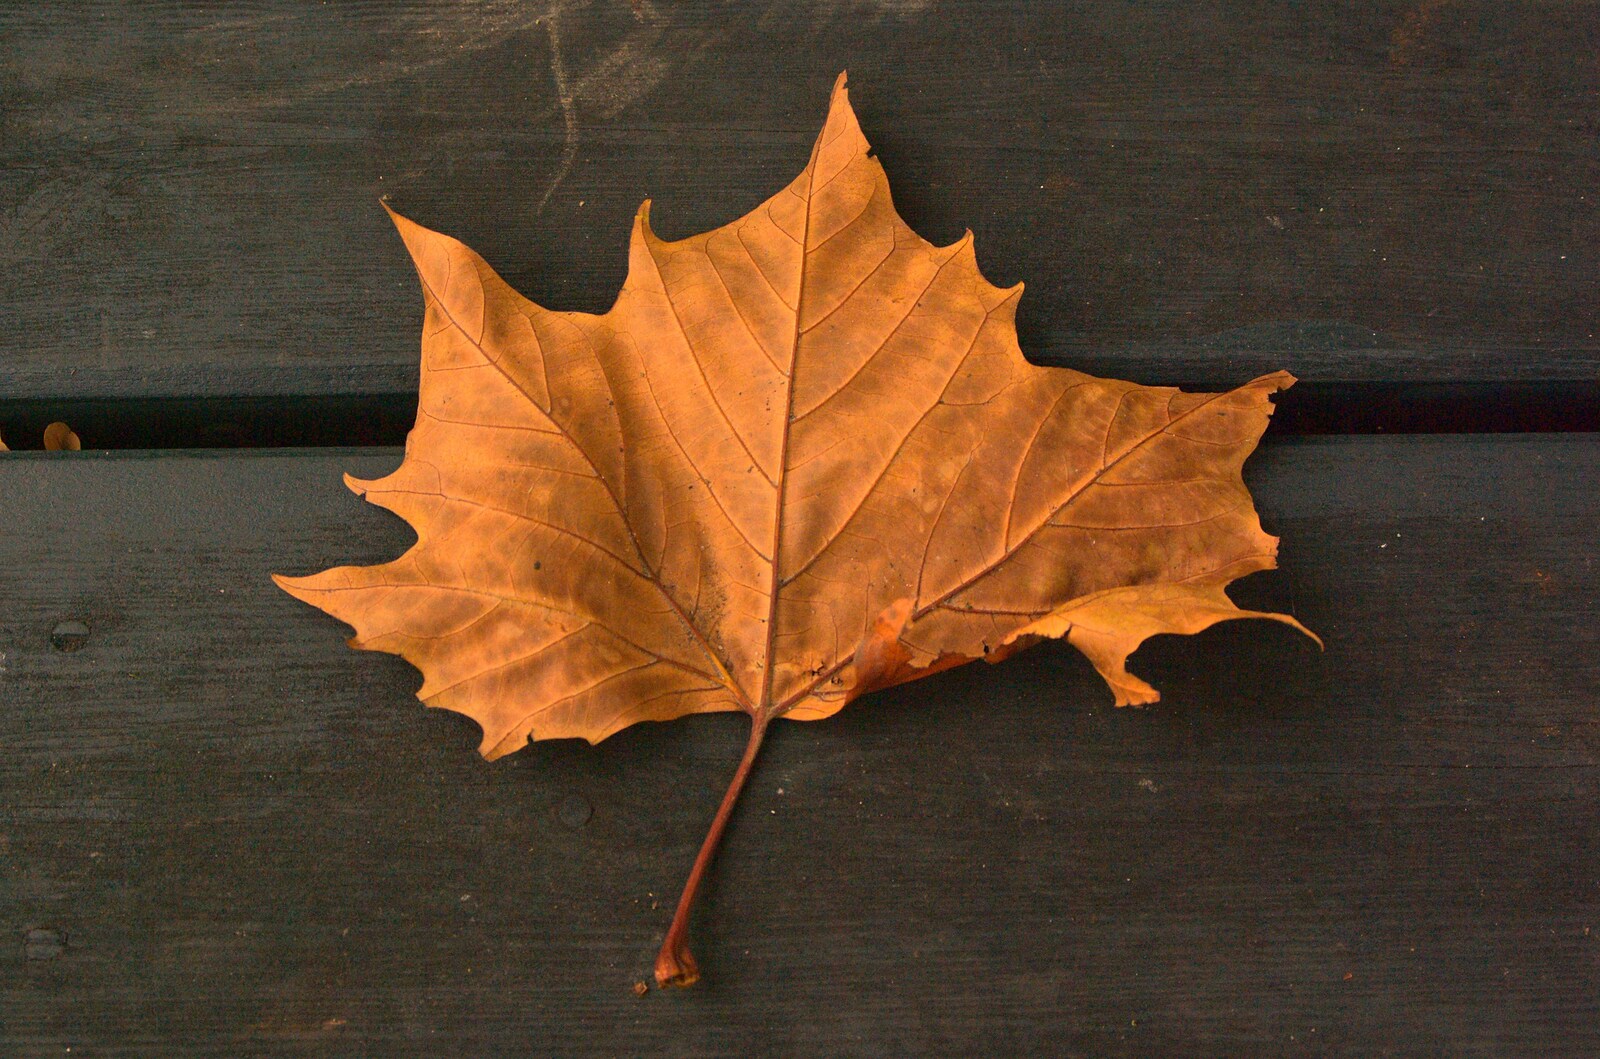 A golden leaf from Autumn in Thornham Estate, Thornham, Suffolk - 6th November 2011